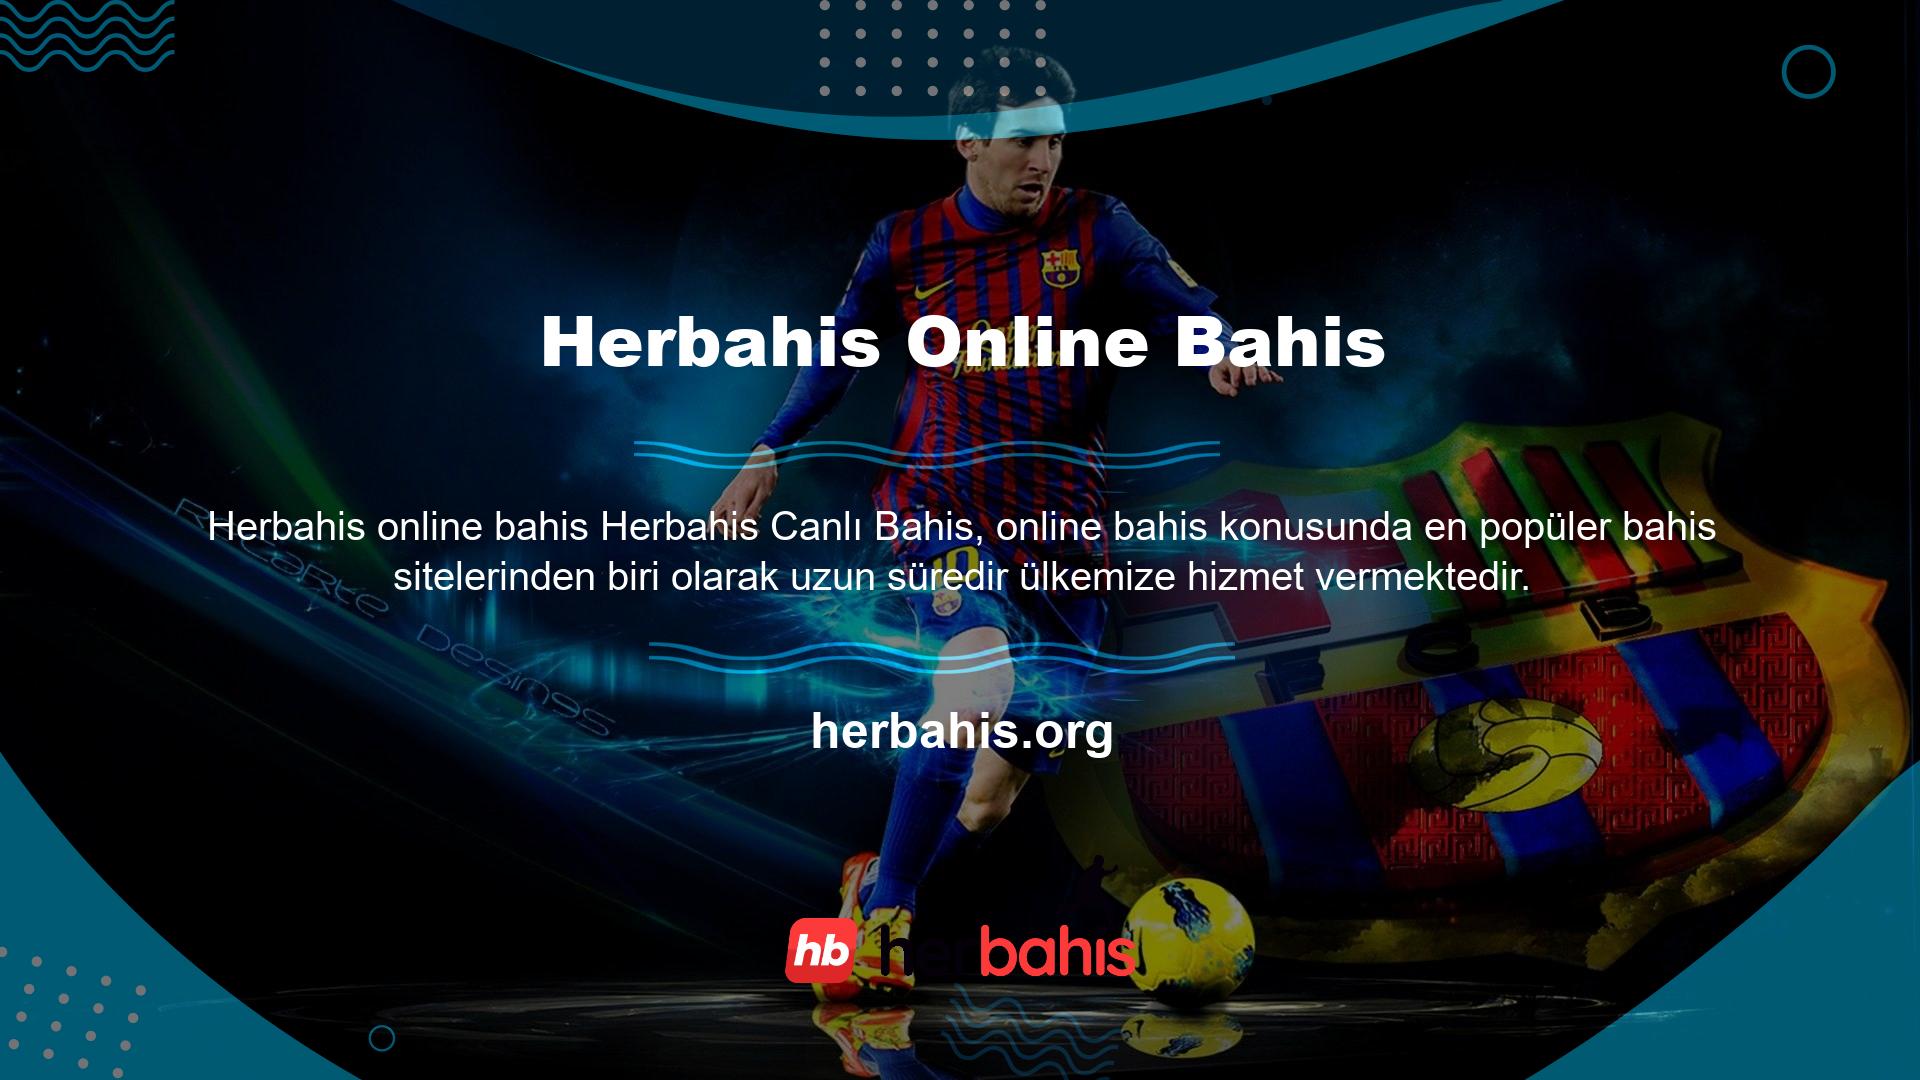 Çeşitli heyecan ve oyun çeşitliliği arayanlar için Herbahis, kullanıcılarına geniş bir canlı bahis yelpazesi sunmaktadır